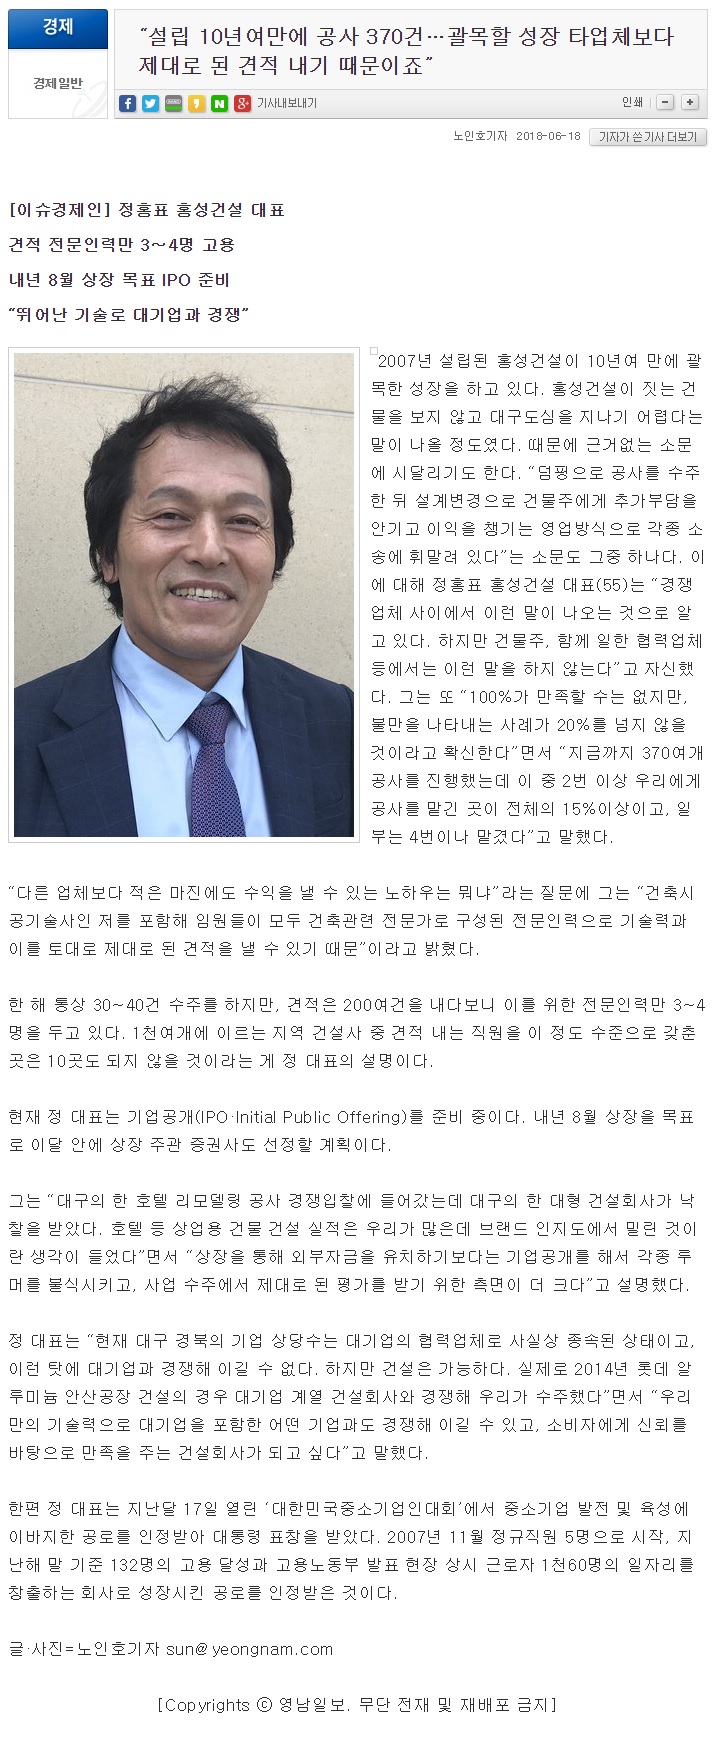 18.06.18 영남일보-설립 10년여만에 공사 370건.jpg